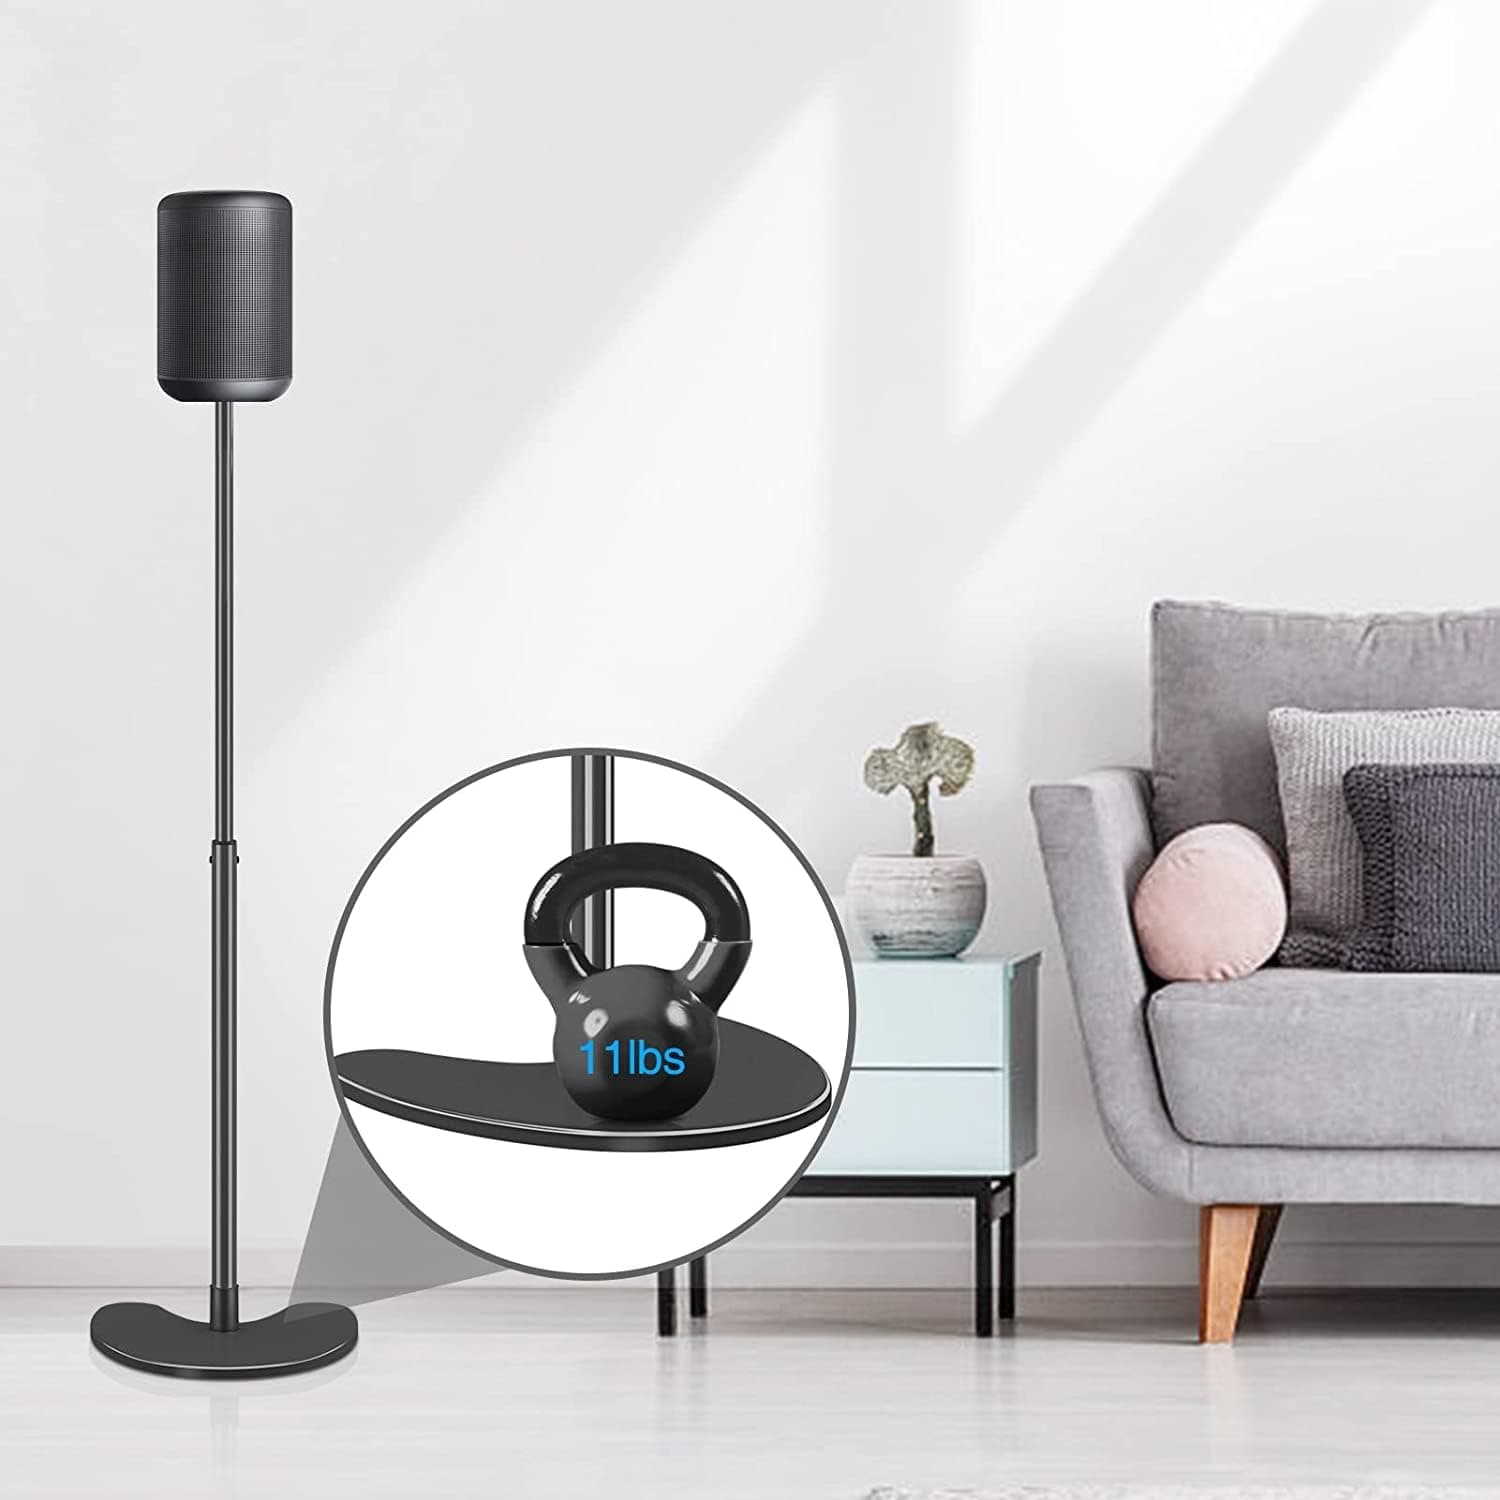 Retrolife 2*11 LBS Pair Floor Speaker Stands with Adjustable Mounts